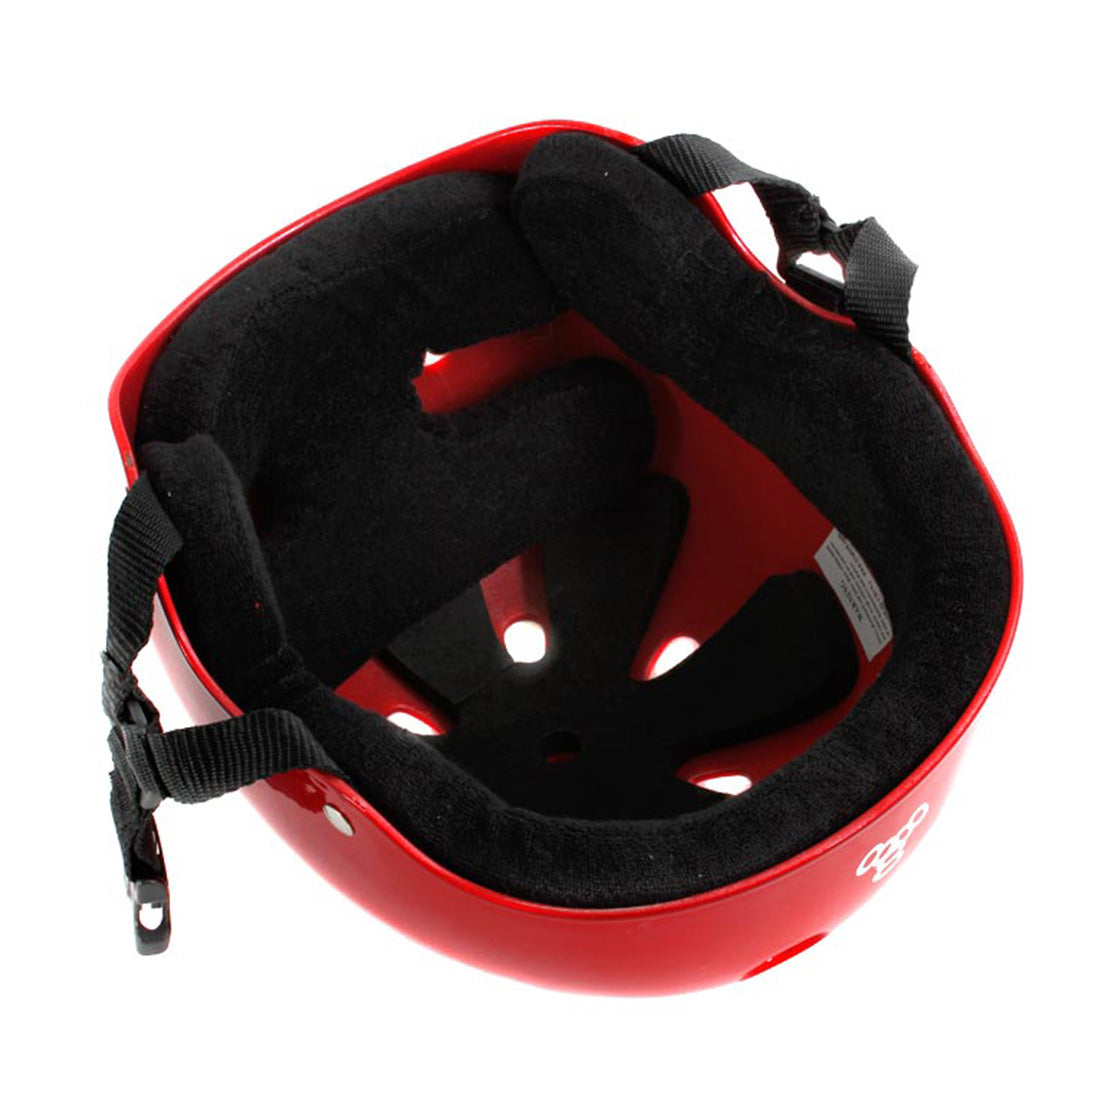 Triple 8 Skate SS Helmet - Red Metallic Gloss Helmets